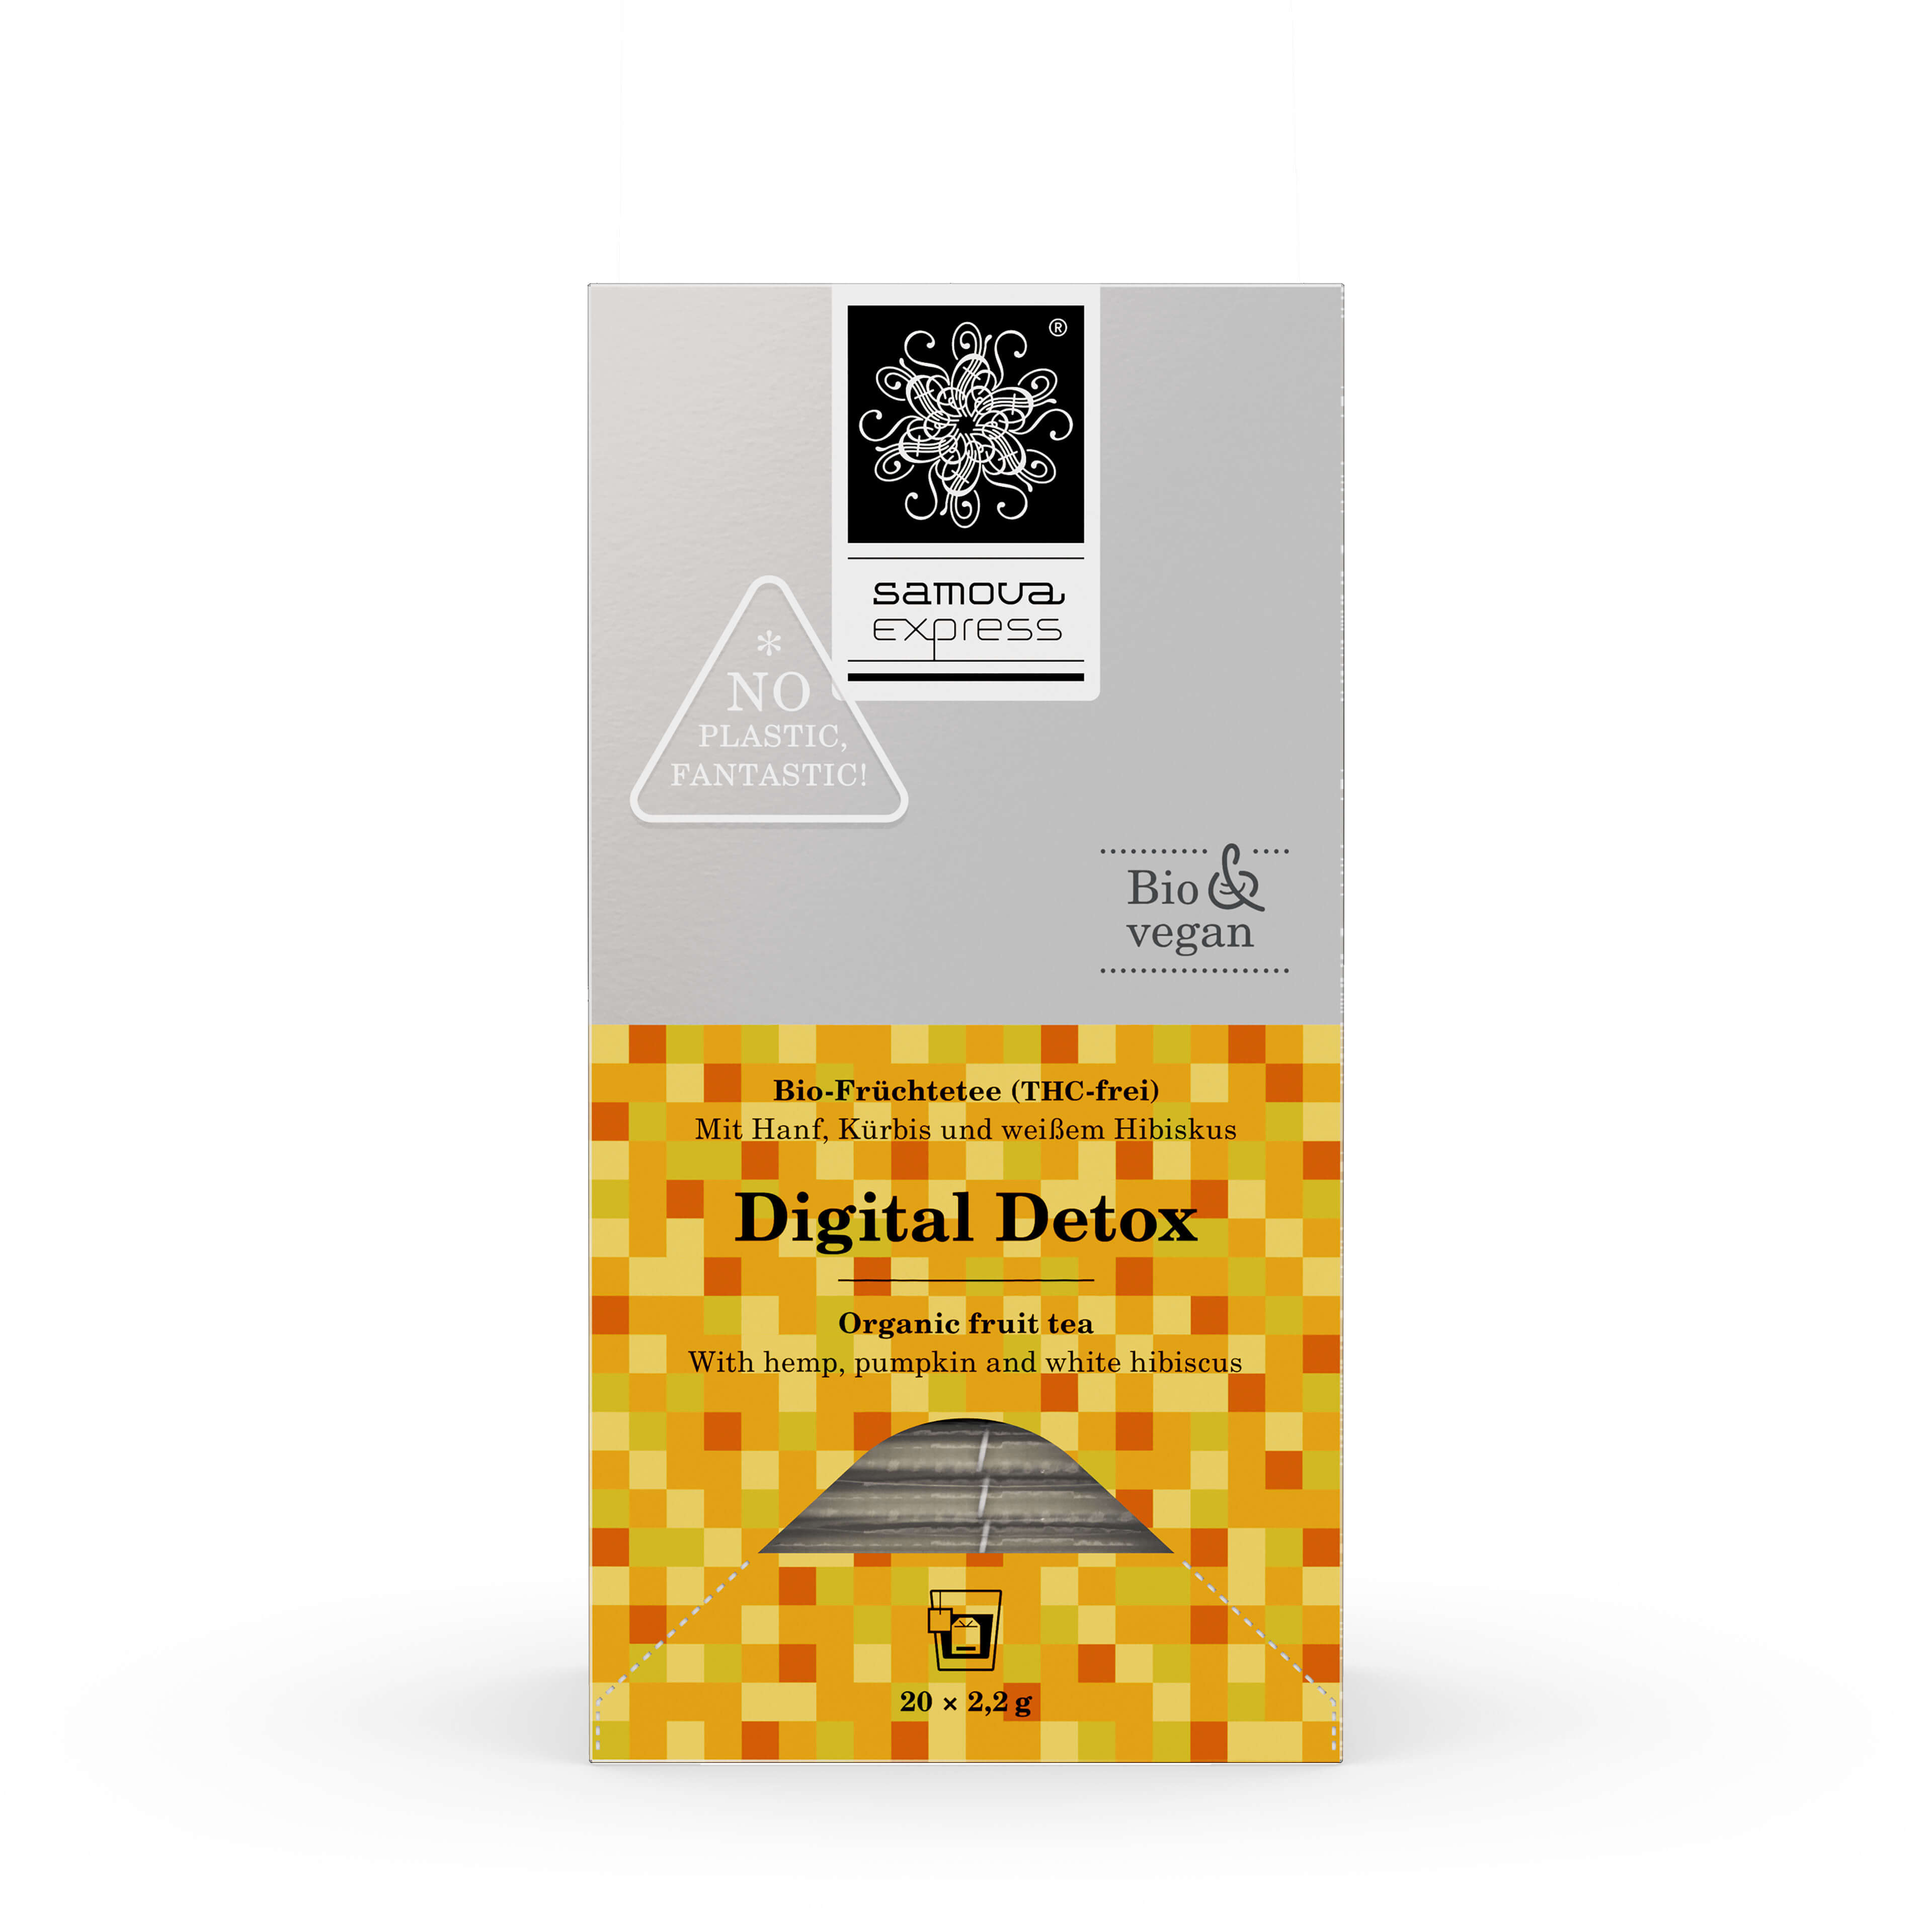 Digital Detox Express